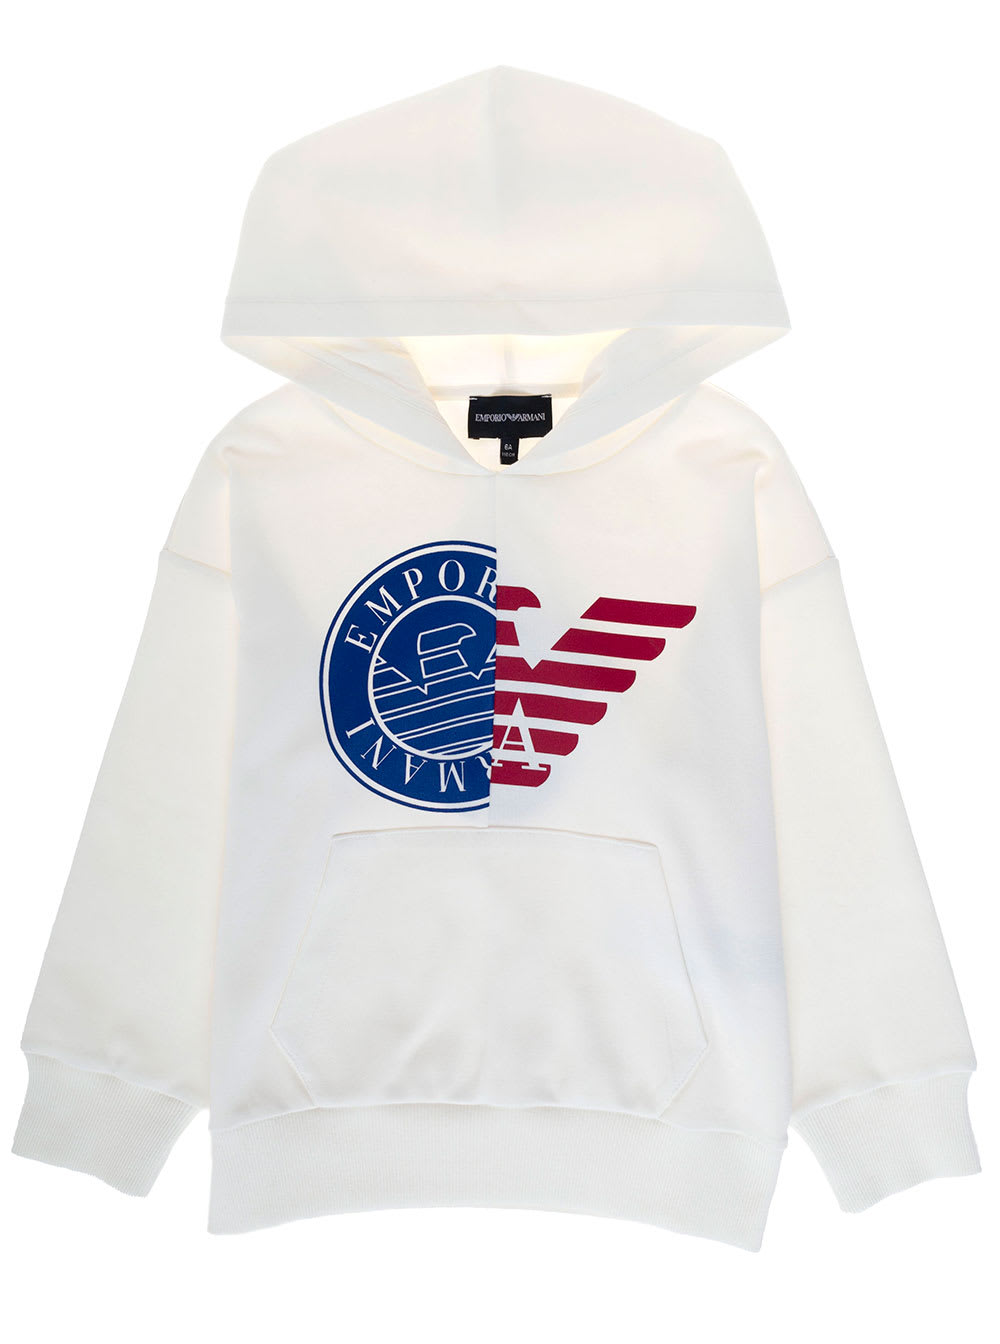 Emporio Armani Boy White Cotton Hoodie With Logo